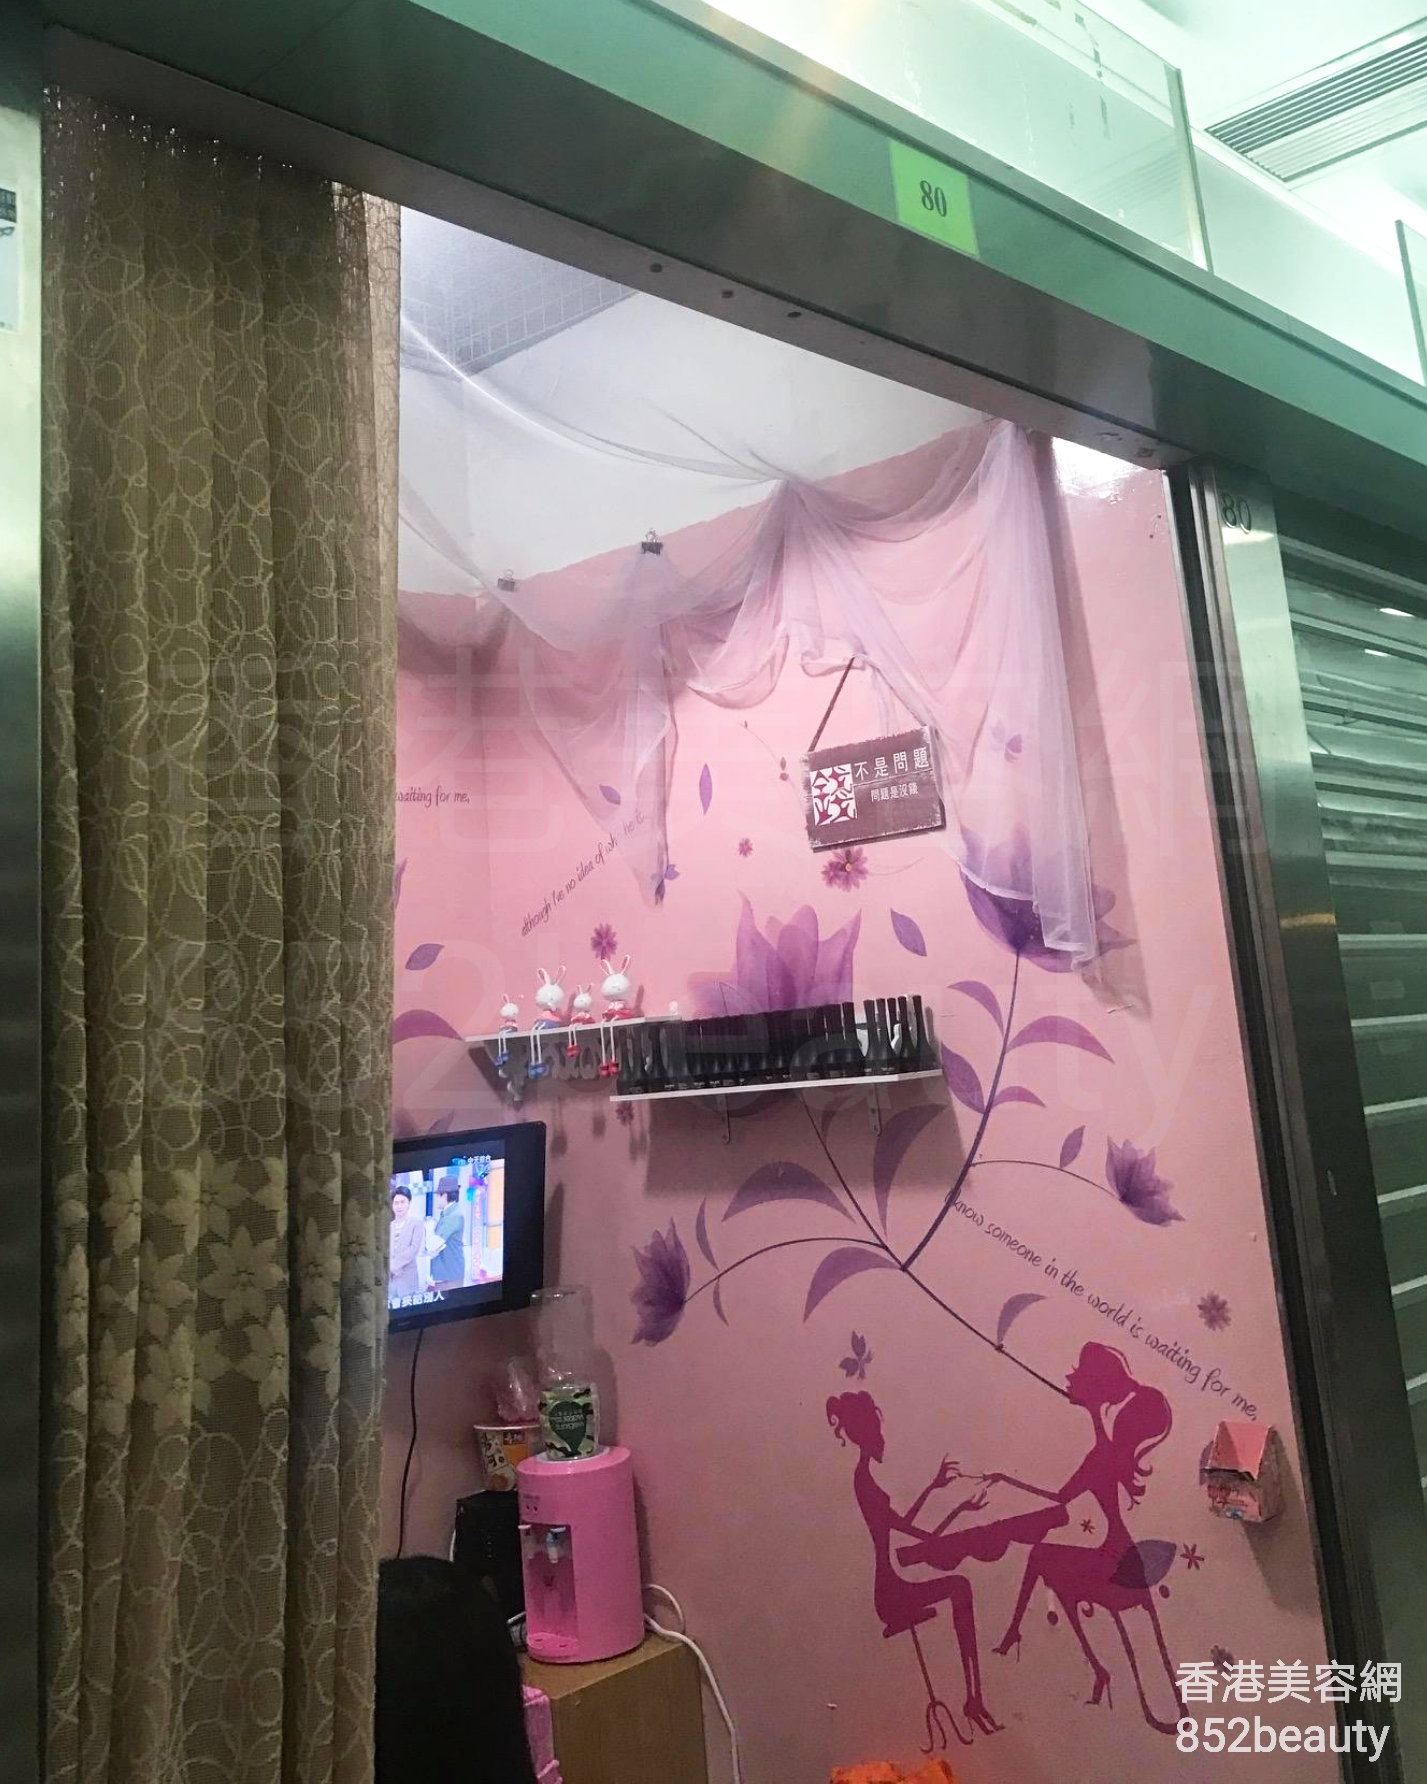 香港美容網 Hong Kong Beauty Salon 美容院 / 美容師: nana.shop